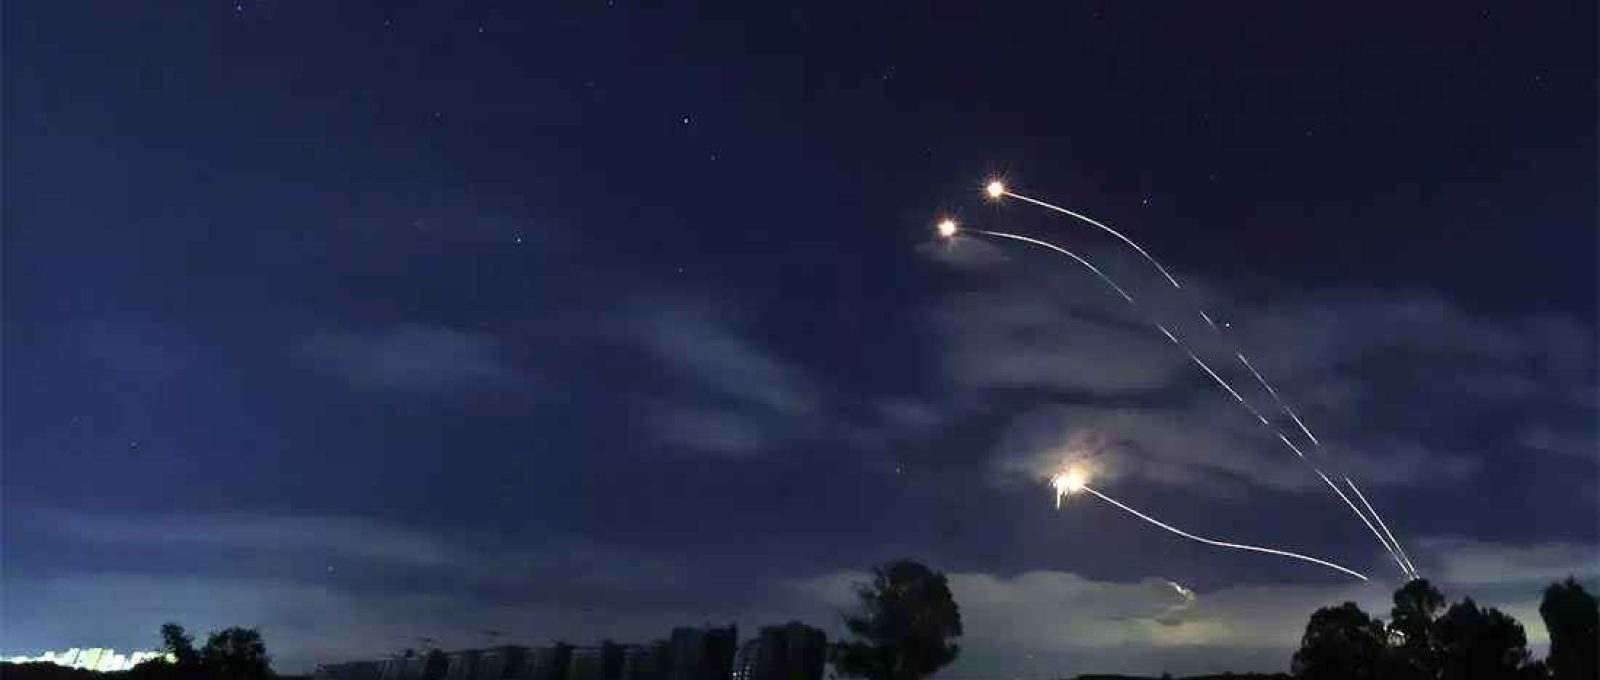 Foto tirada de Sderot, no sul de Israel, na fronteira com Gaza, mostra foguetes disparados pelo sistema de defesa anti-mísseis Iron Dome de Israel, em 13 de maio de 2021 (Foto: Emmanuel Dunand/AFP).